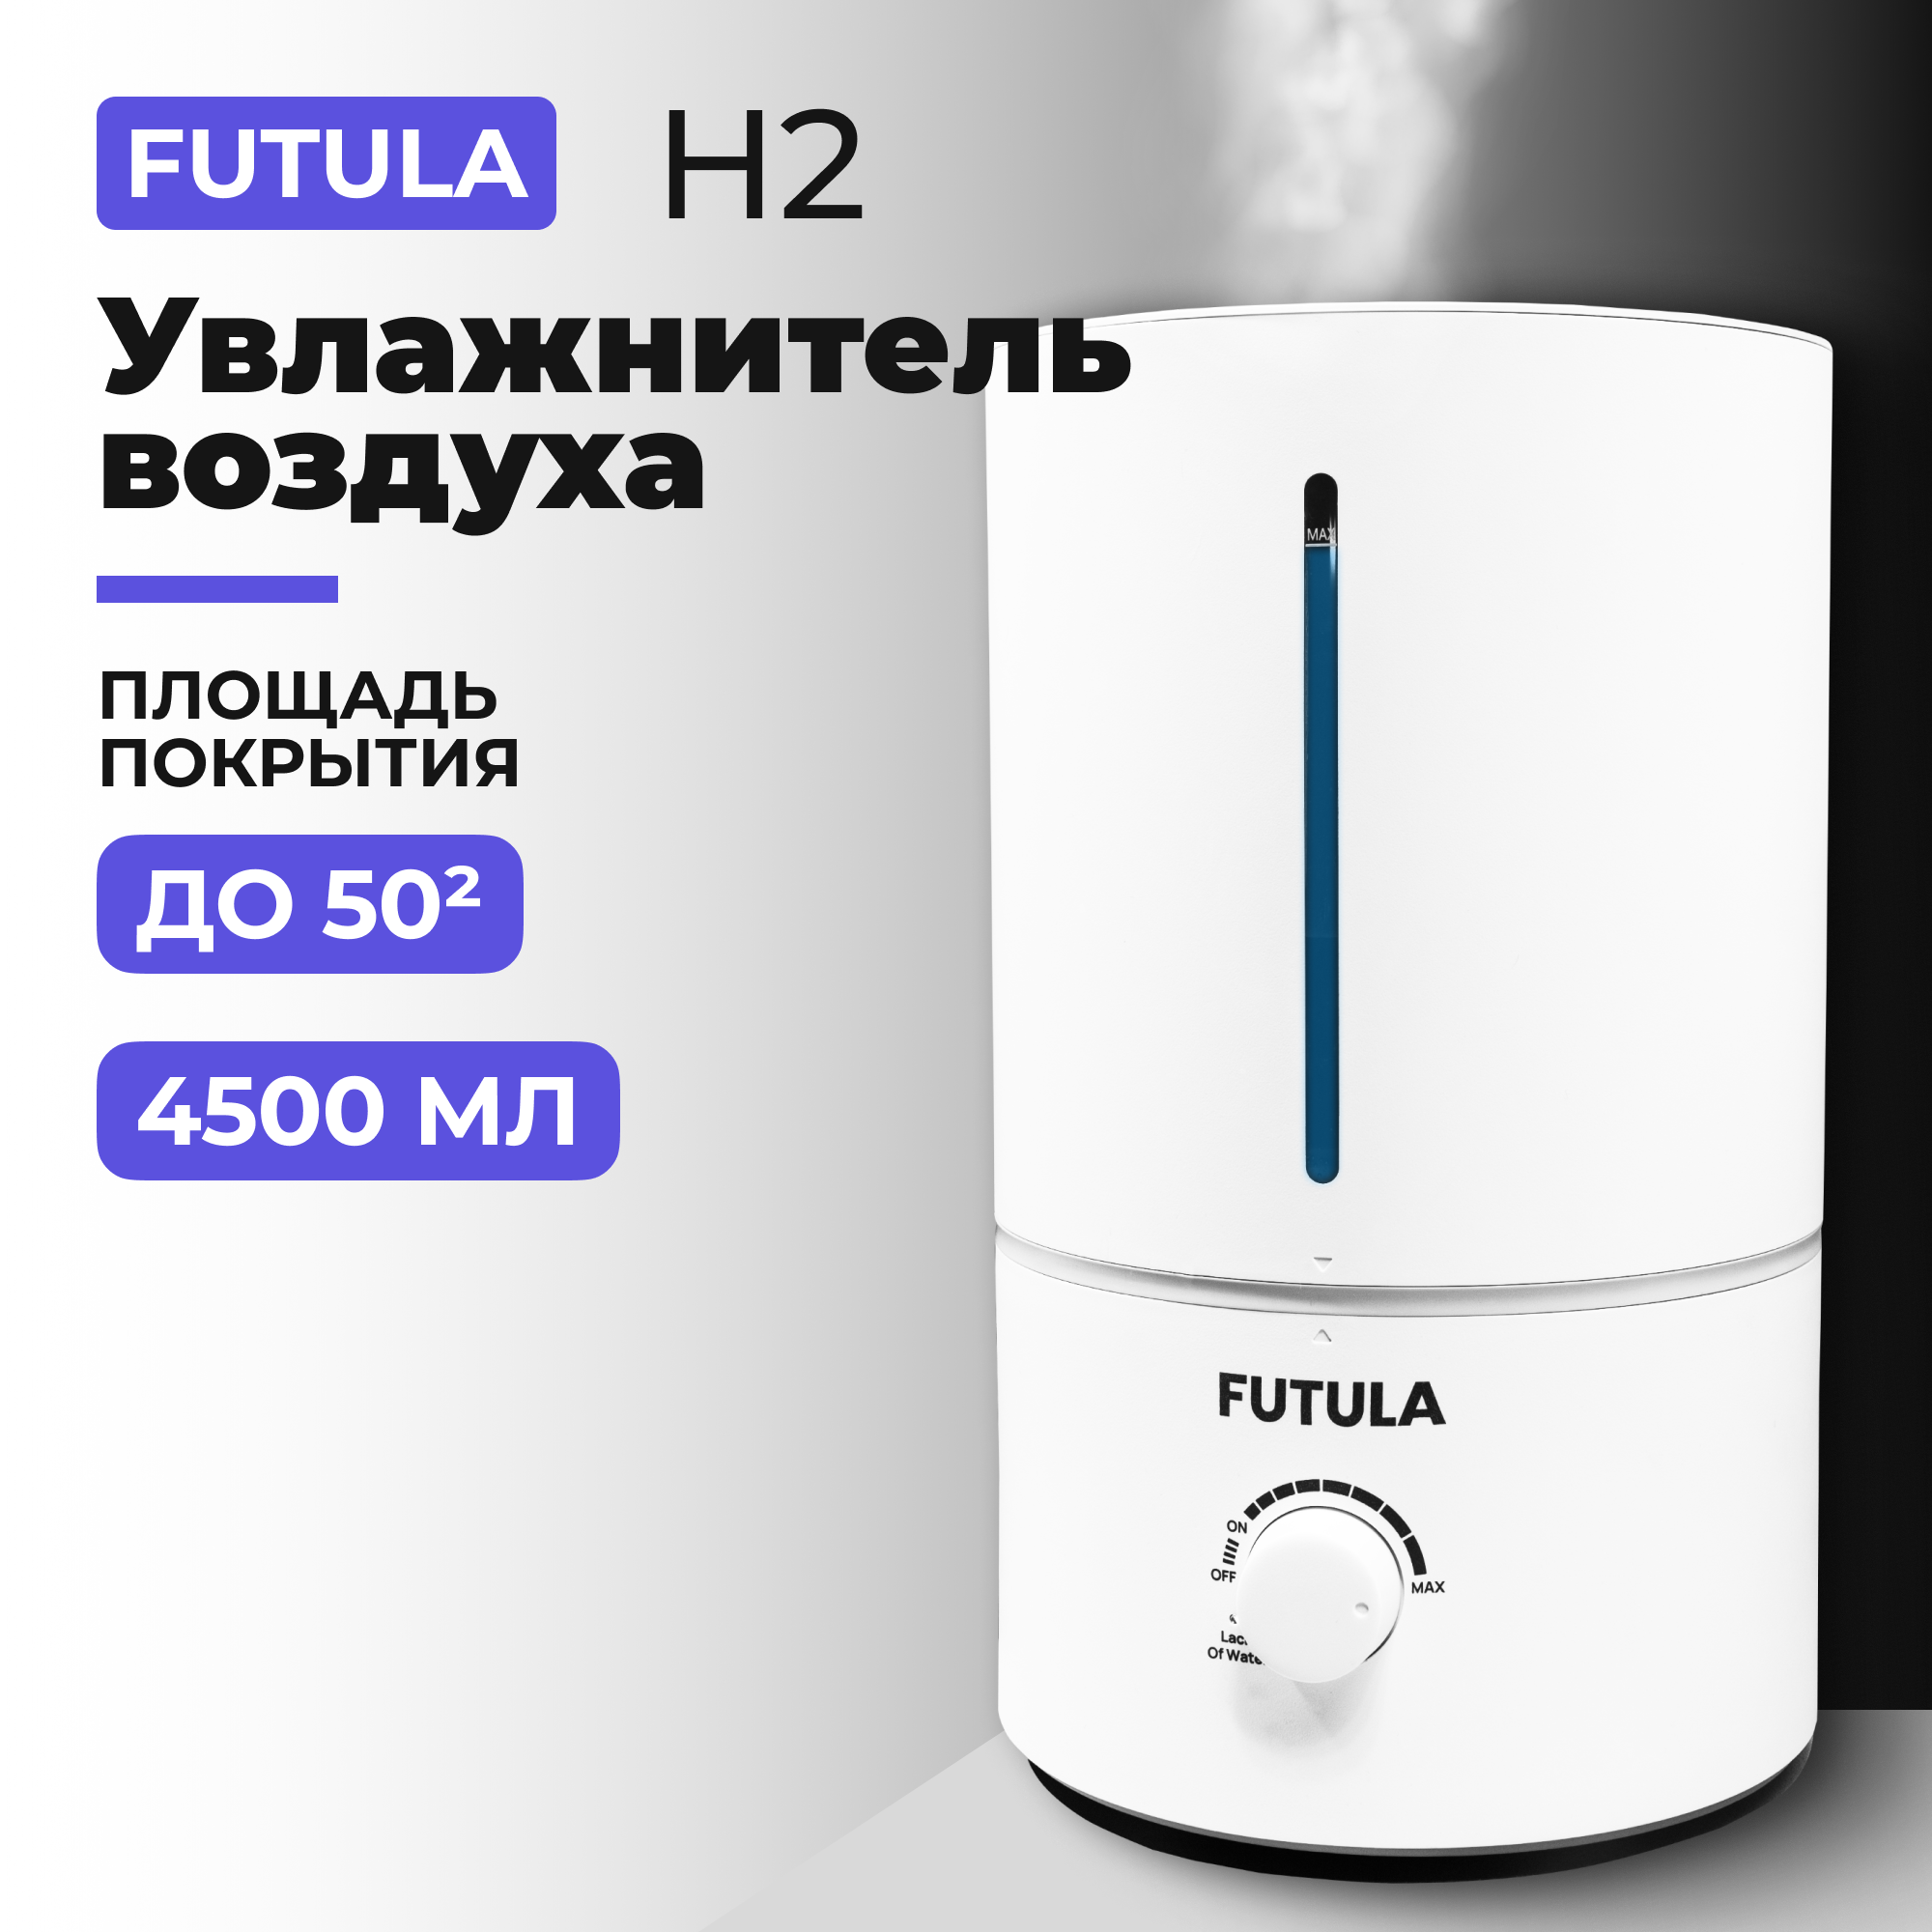 Воздухоувлажнитель Futula H2 белый воздухоувлажнитель windigo hm 3 голубой